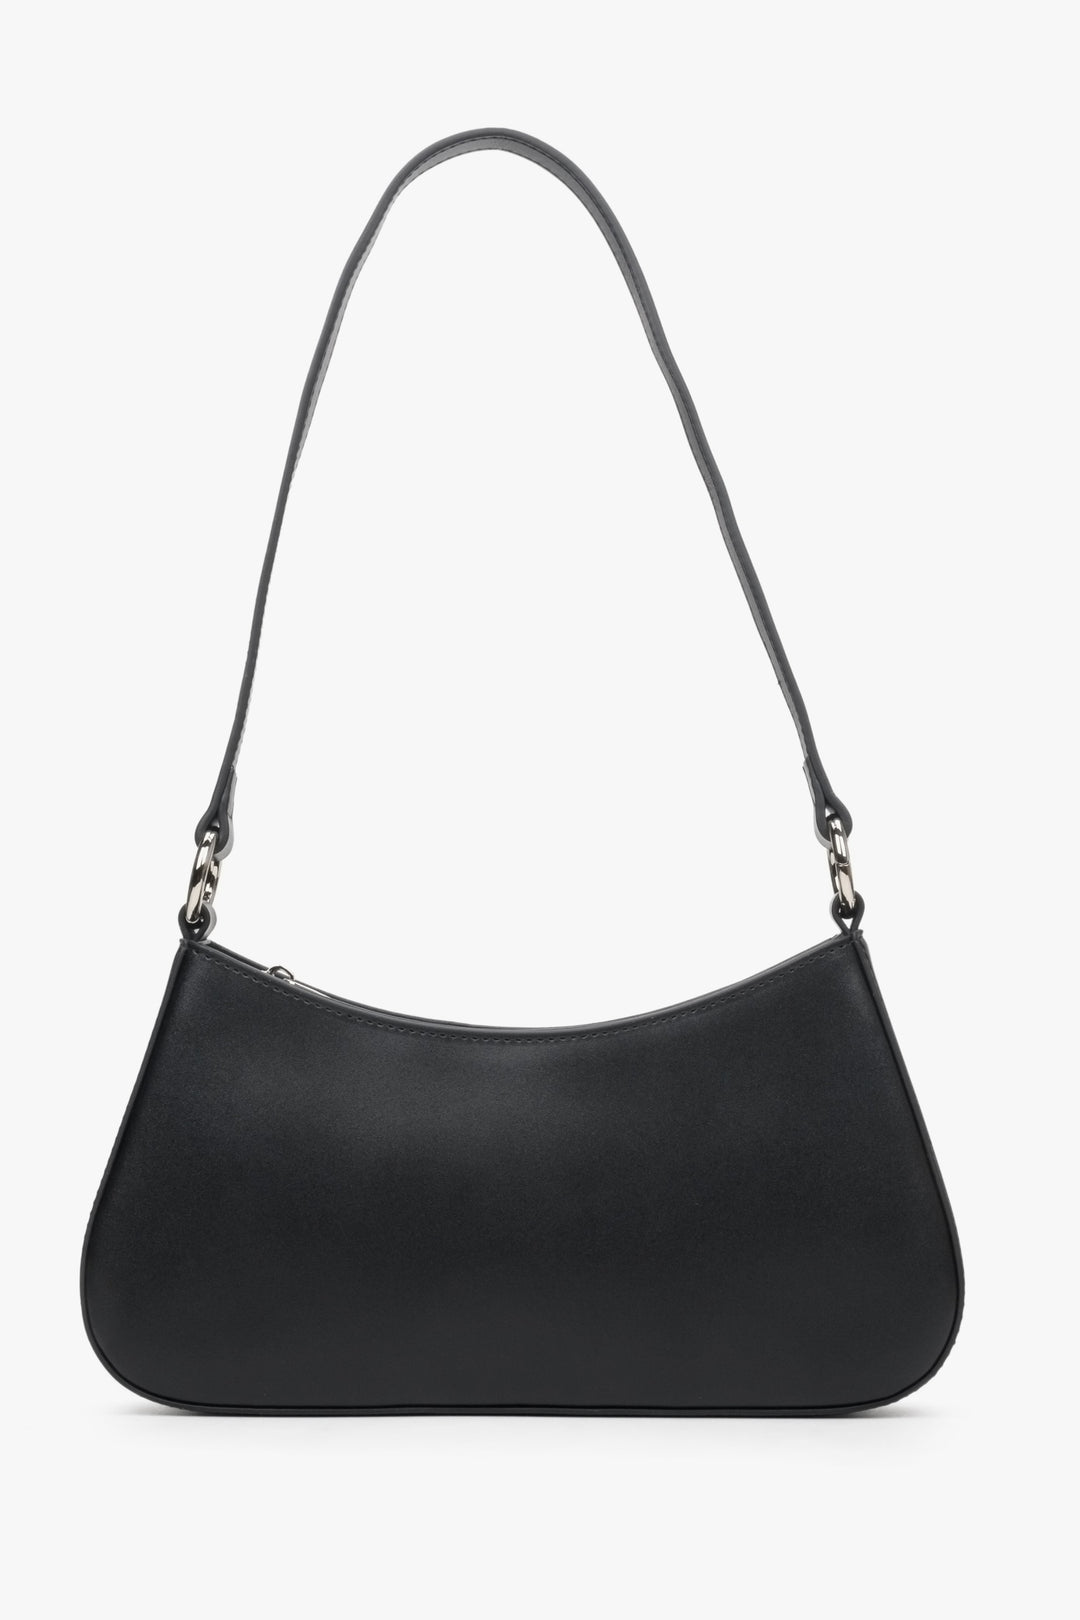 Women's black leather baguette bag by Estro.